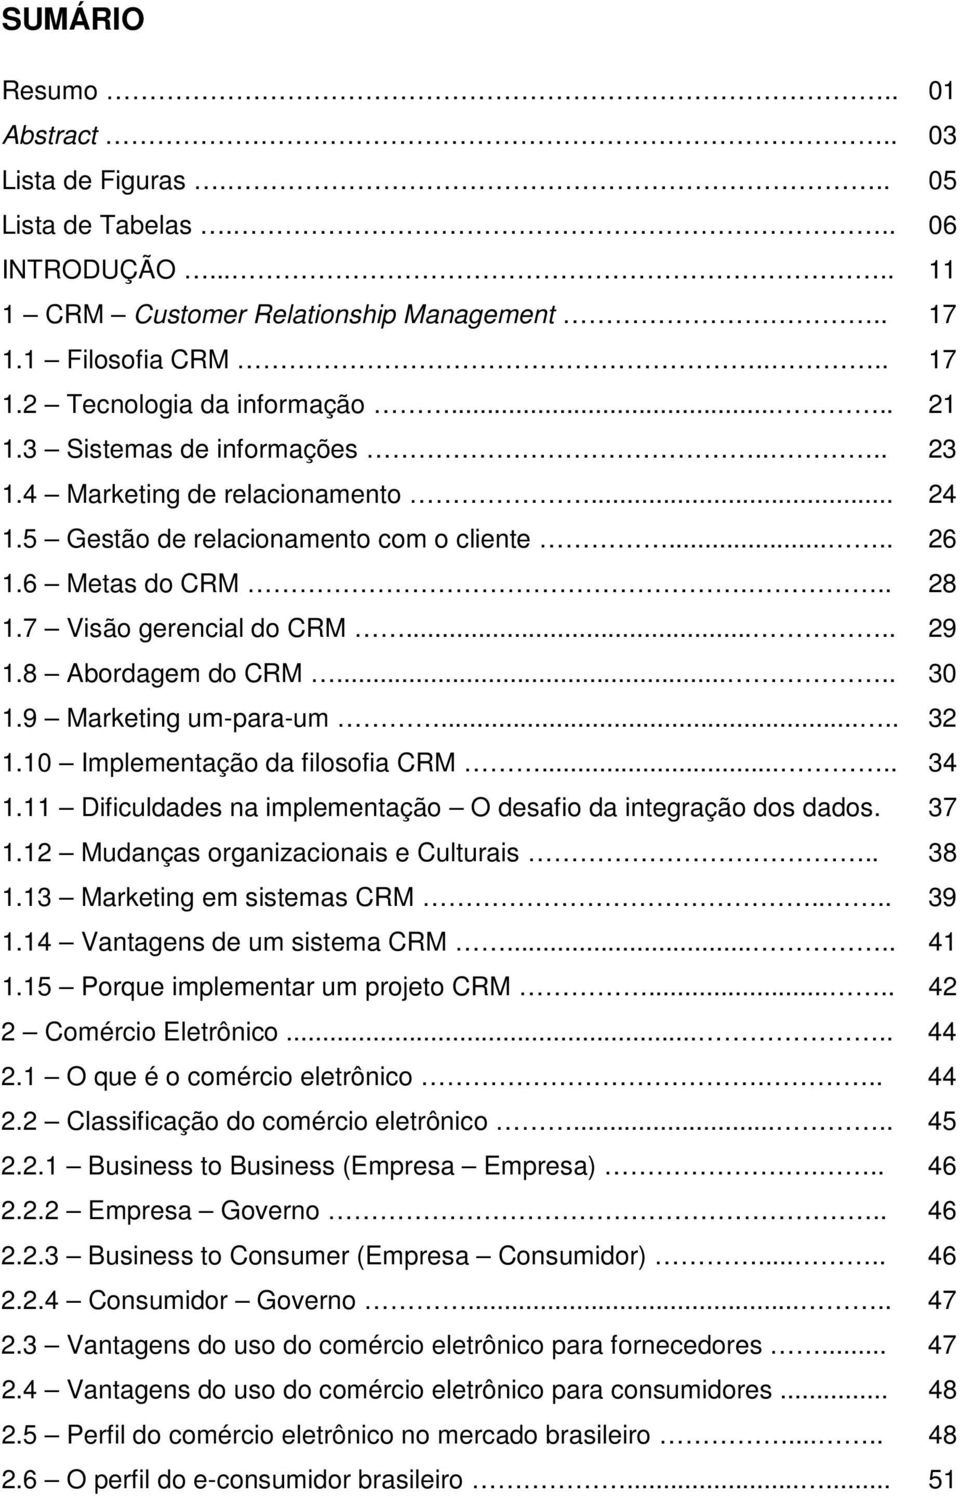 8 Abordagem do CRM..... 30 1.9 Marketing um-para-um..... 32 1.10 Implementação da filosofia CRM..... 34 1.11 Dificuldades na implementação O desafio da integração dos dados. 37 1.